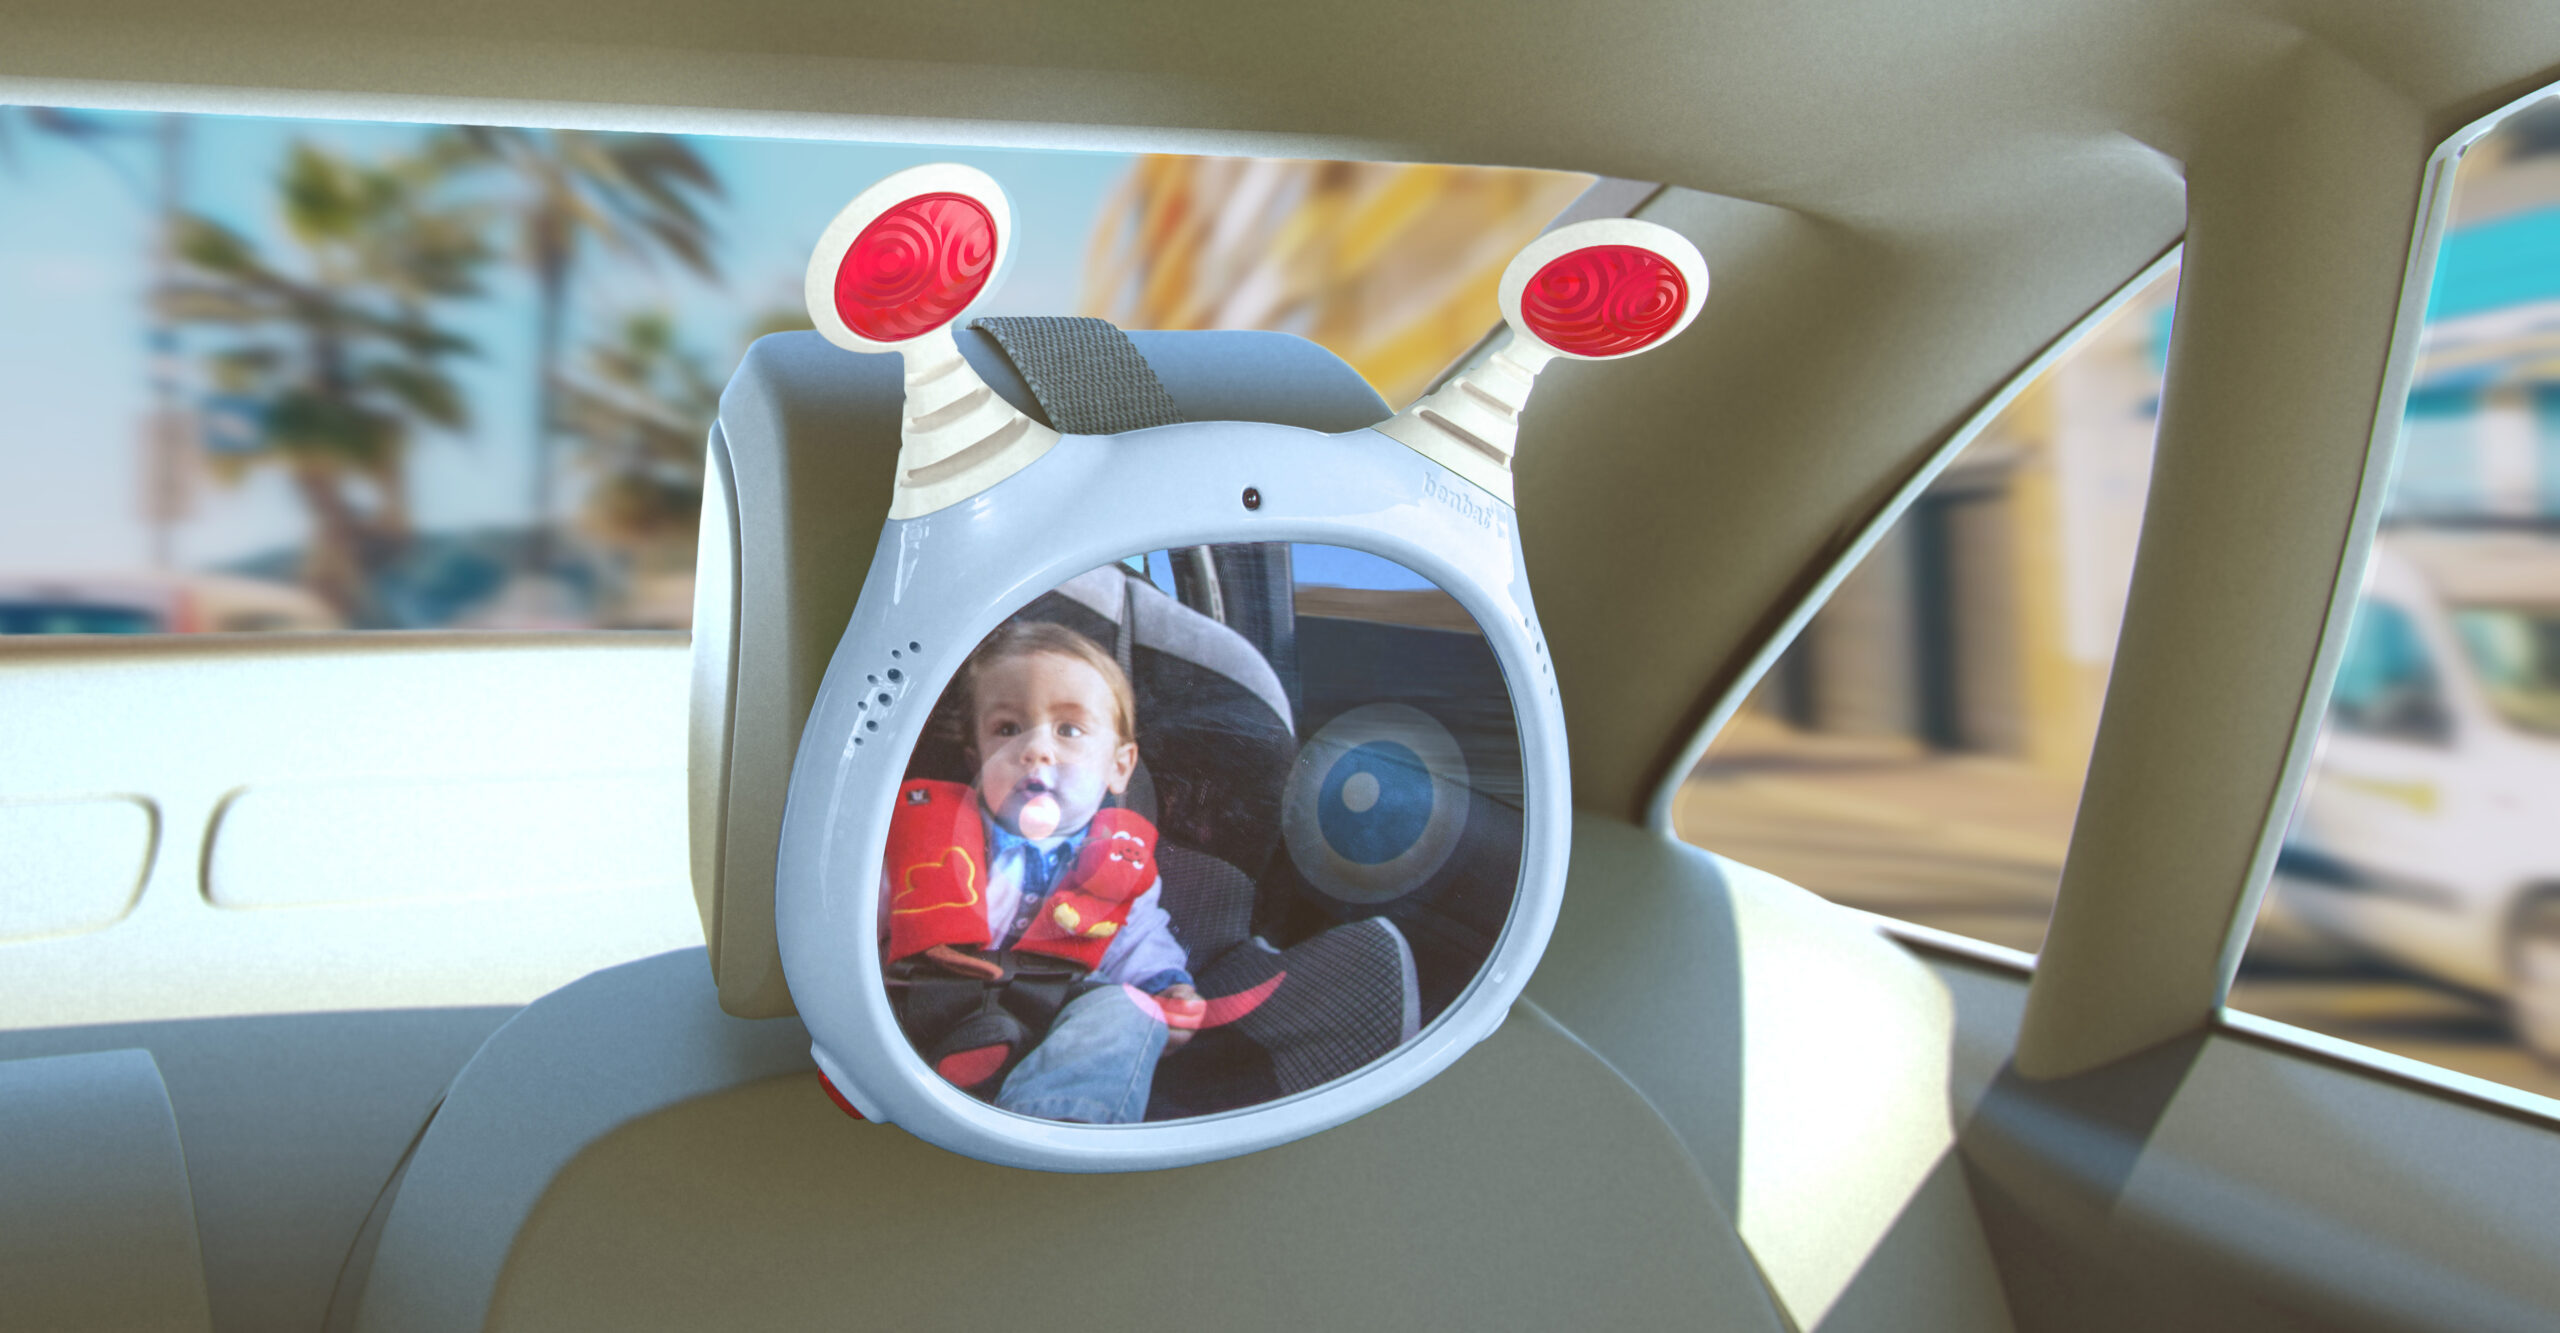 Oly Active Baby Car Mirror with Remote Control | BenBat | VeeBee